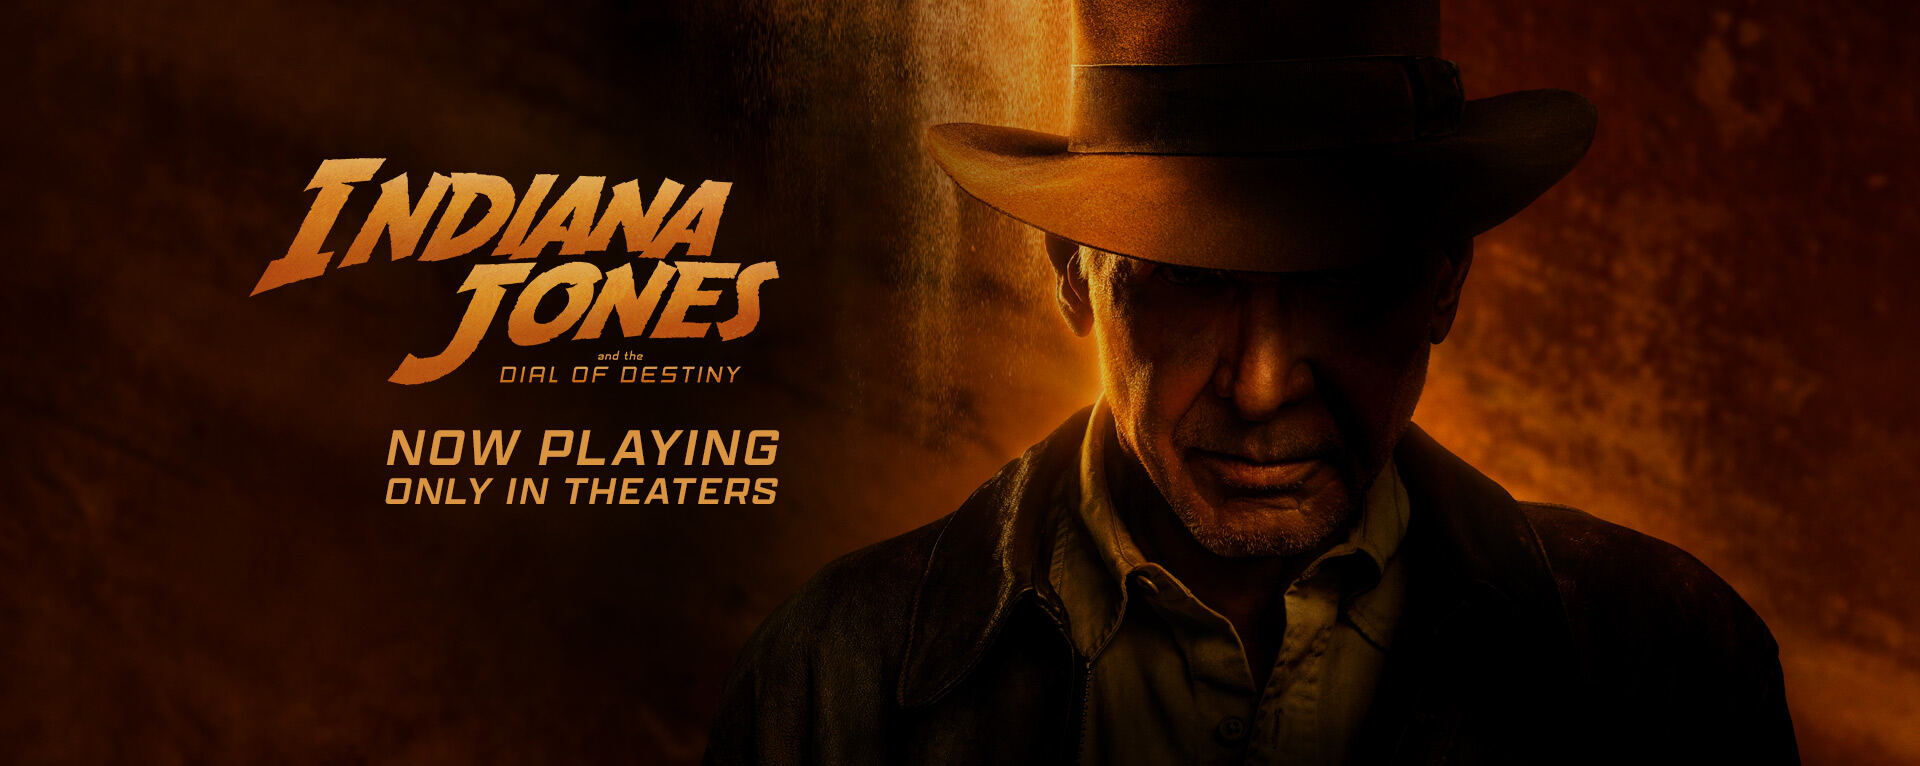 ინდიანა ჯონსი 5 / Indiana Jones and the Dial of